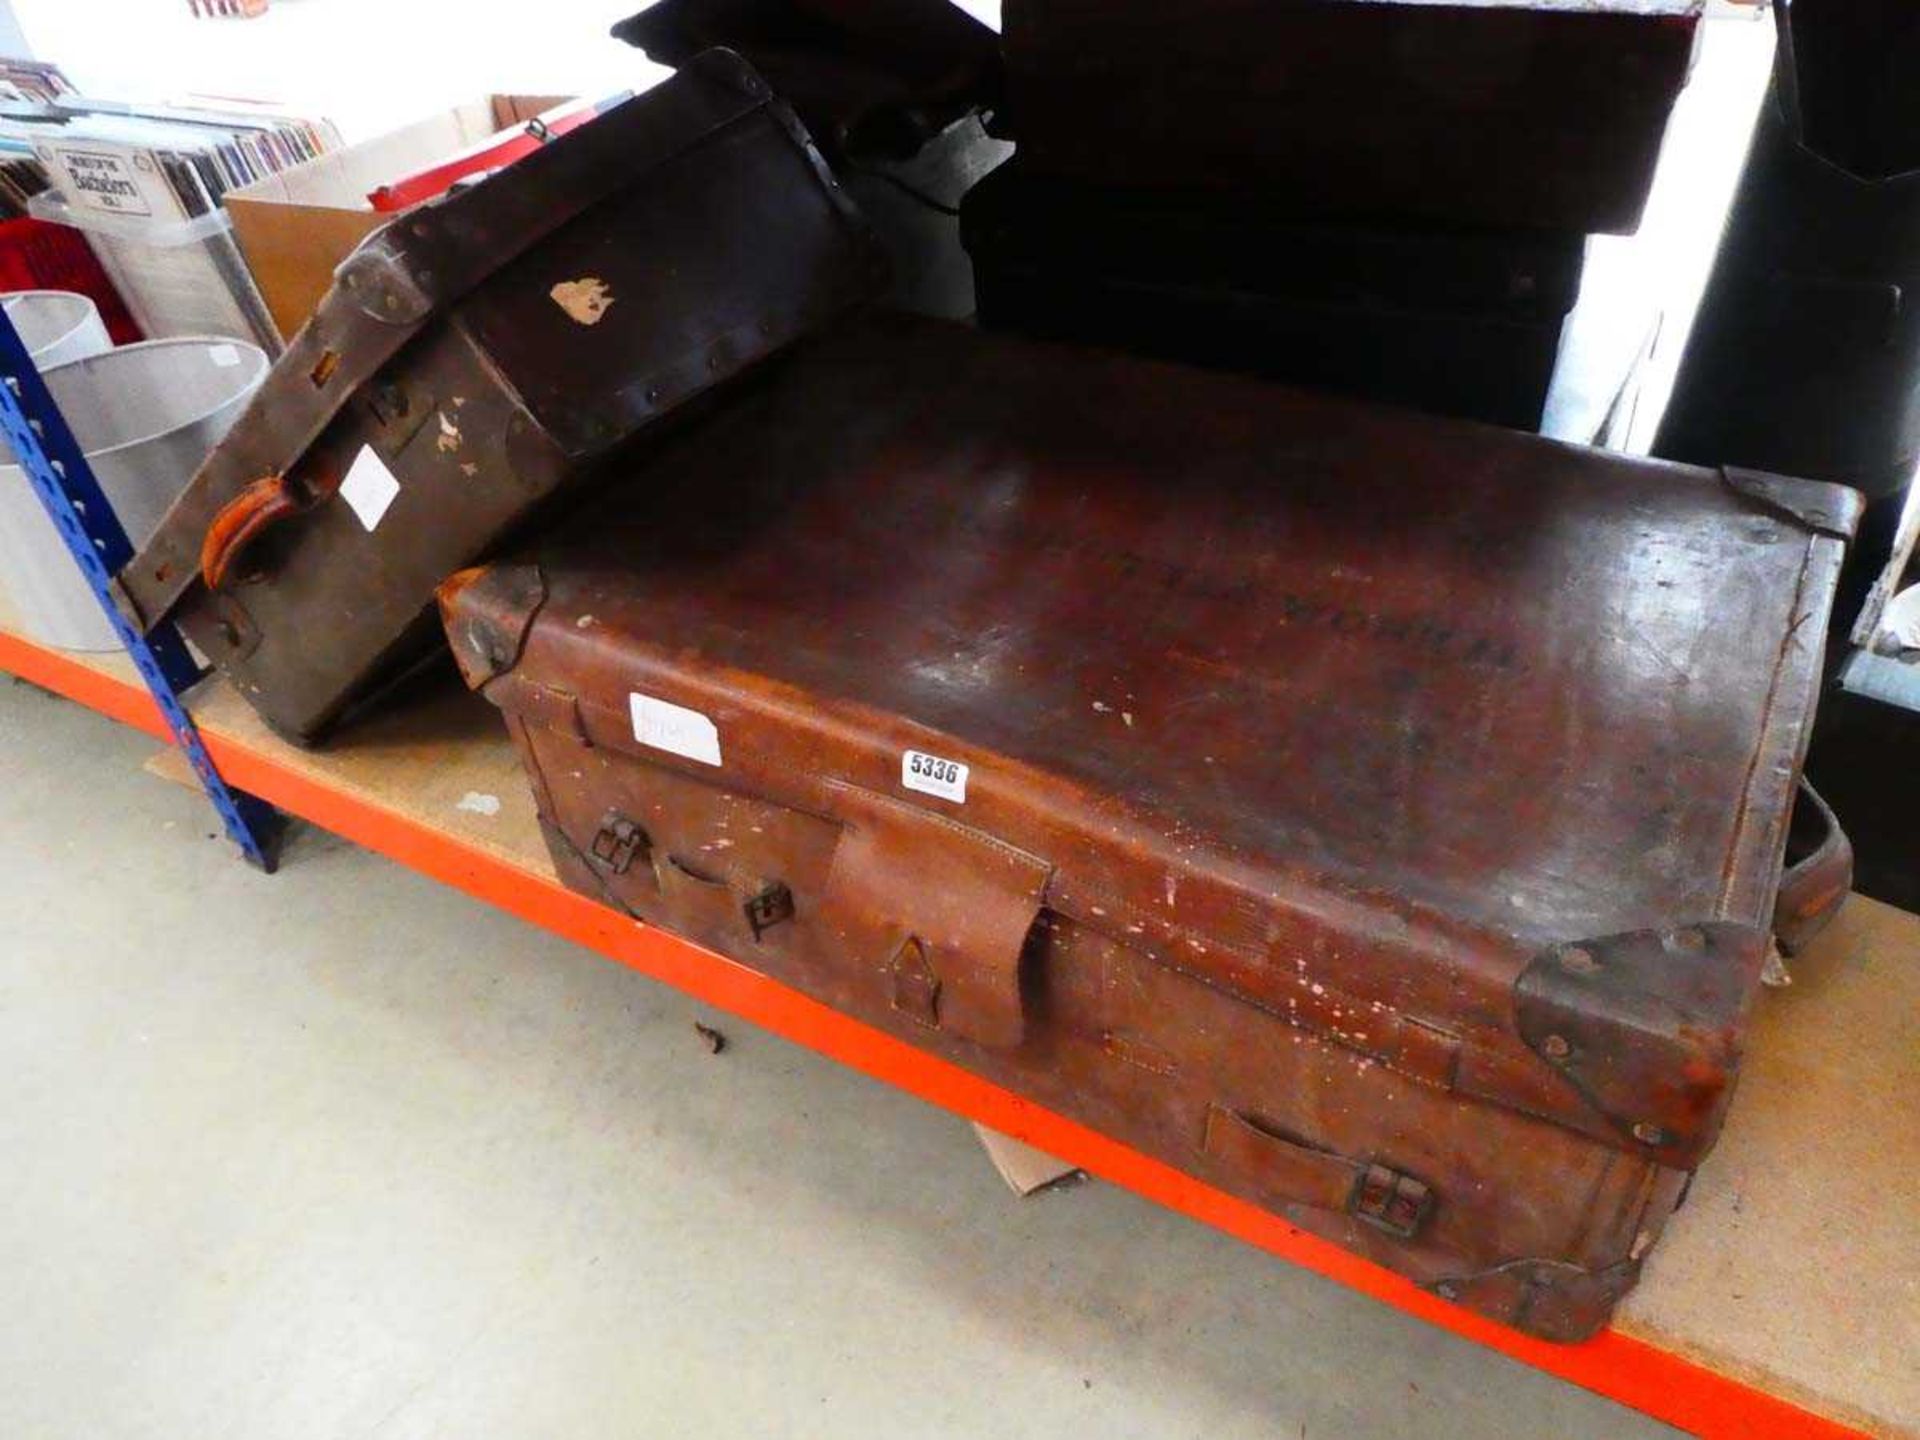 2 vintage travelling cases